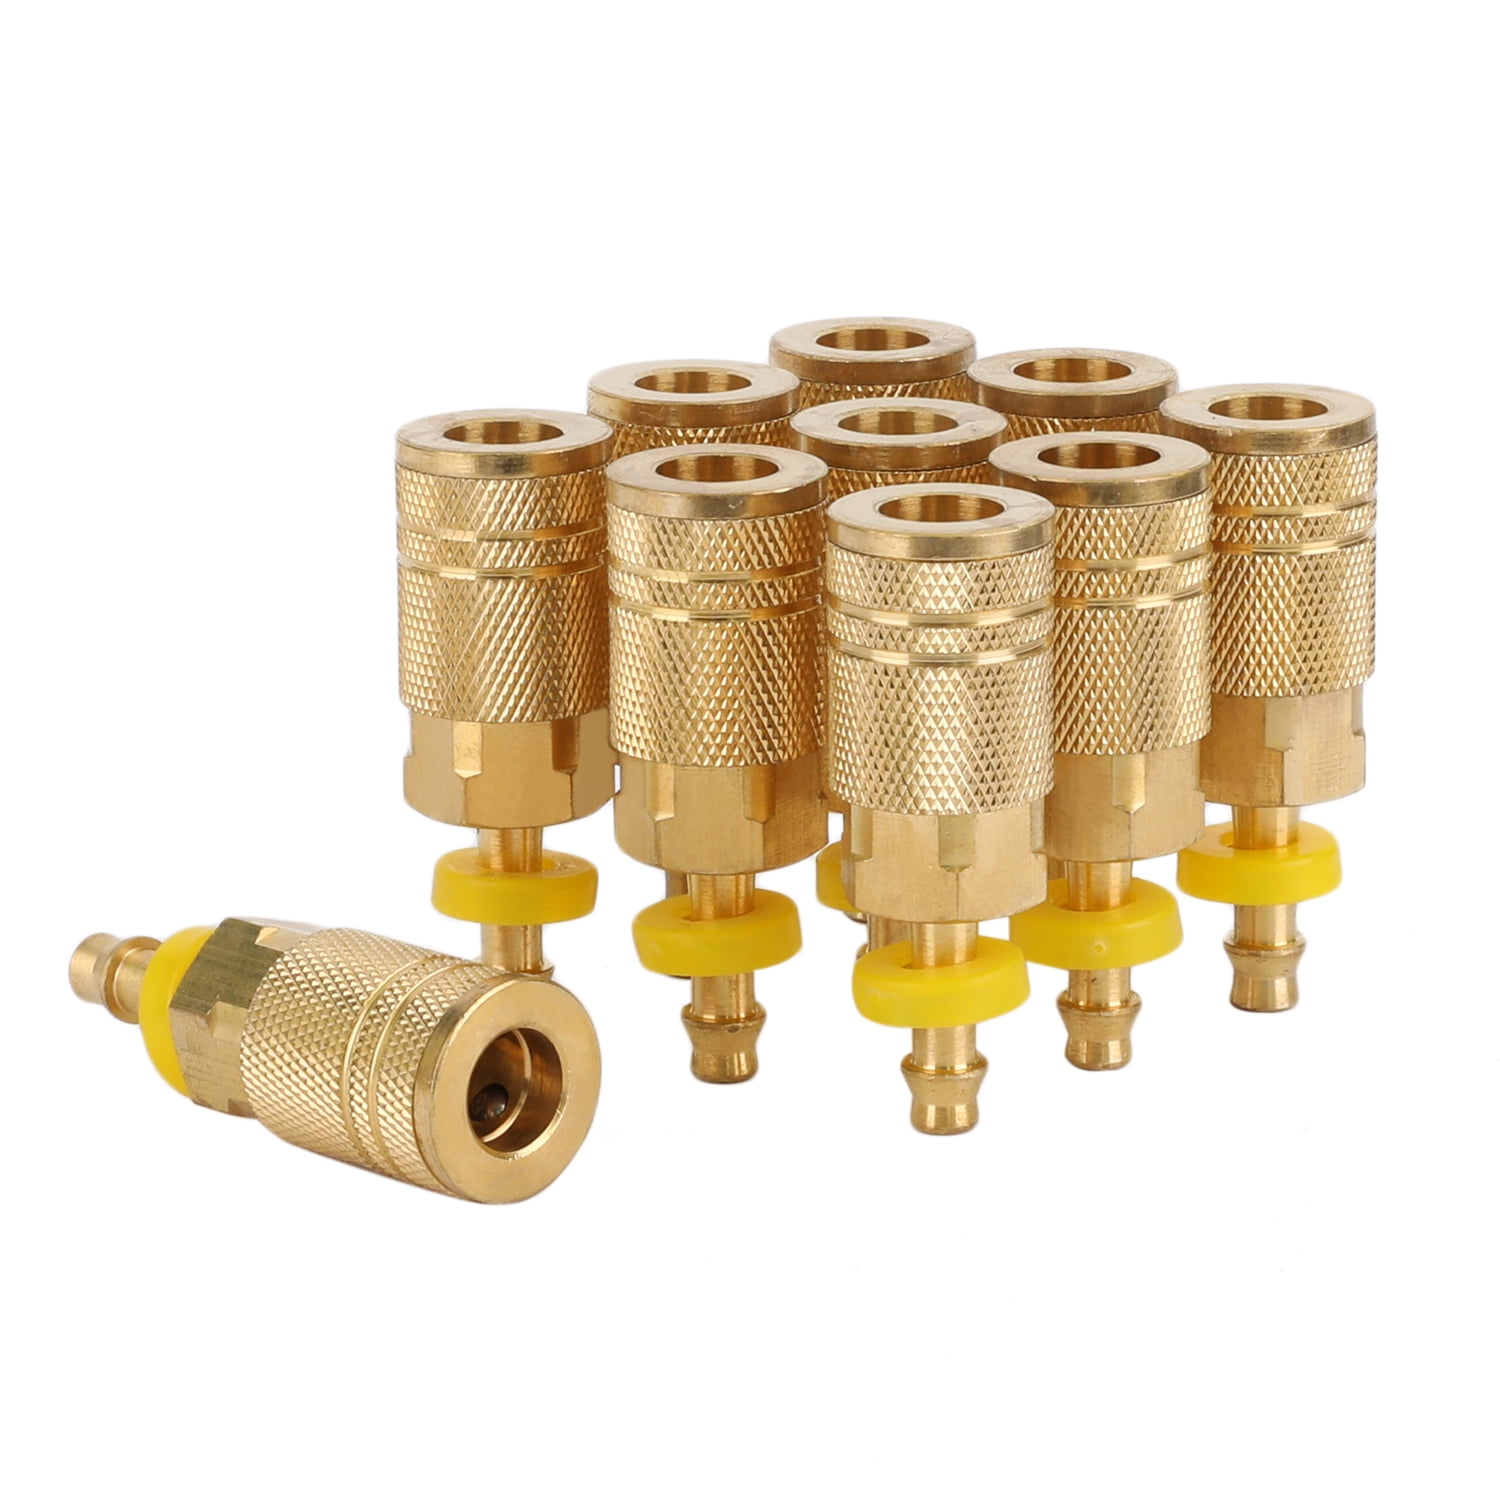 10 1/4" Brass Hose Barb Stem Pneumatic Air Compressor Quick Connect Fitting Plug 